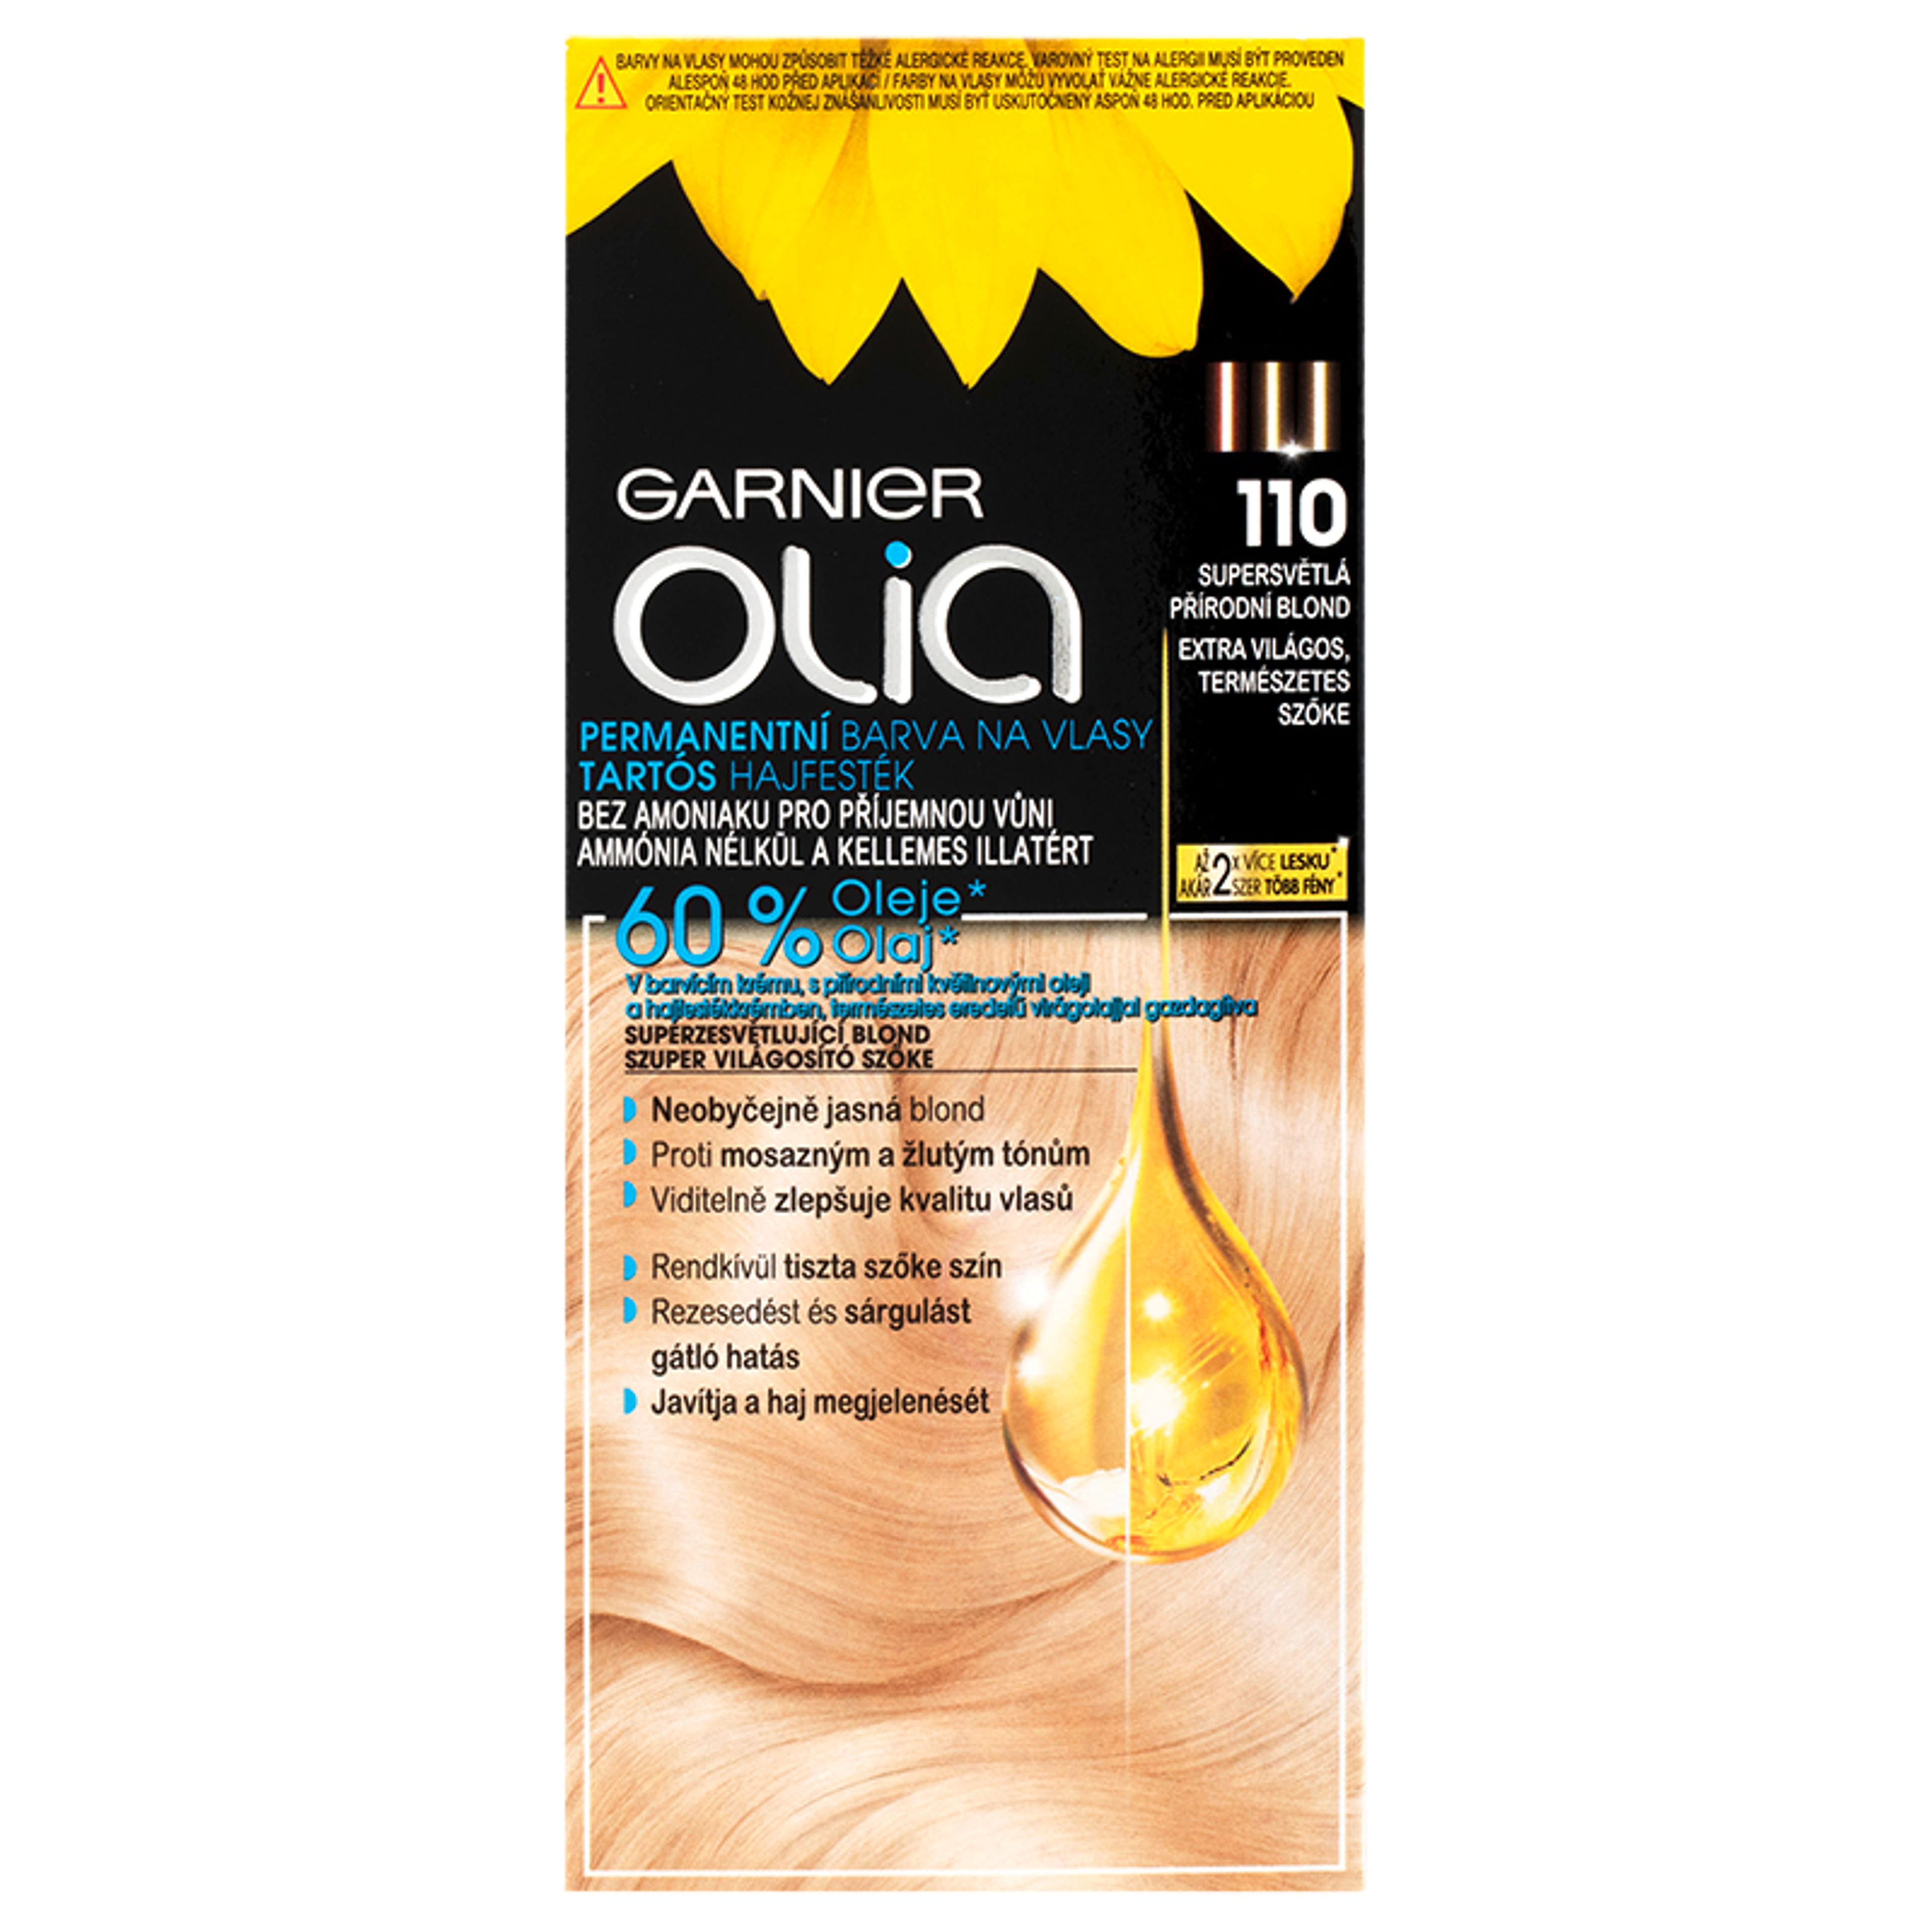 Garnier Olia tartós hajfesték 110 Extra világos természetes szőke - 1 db-2